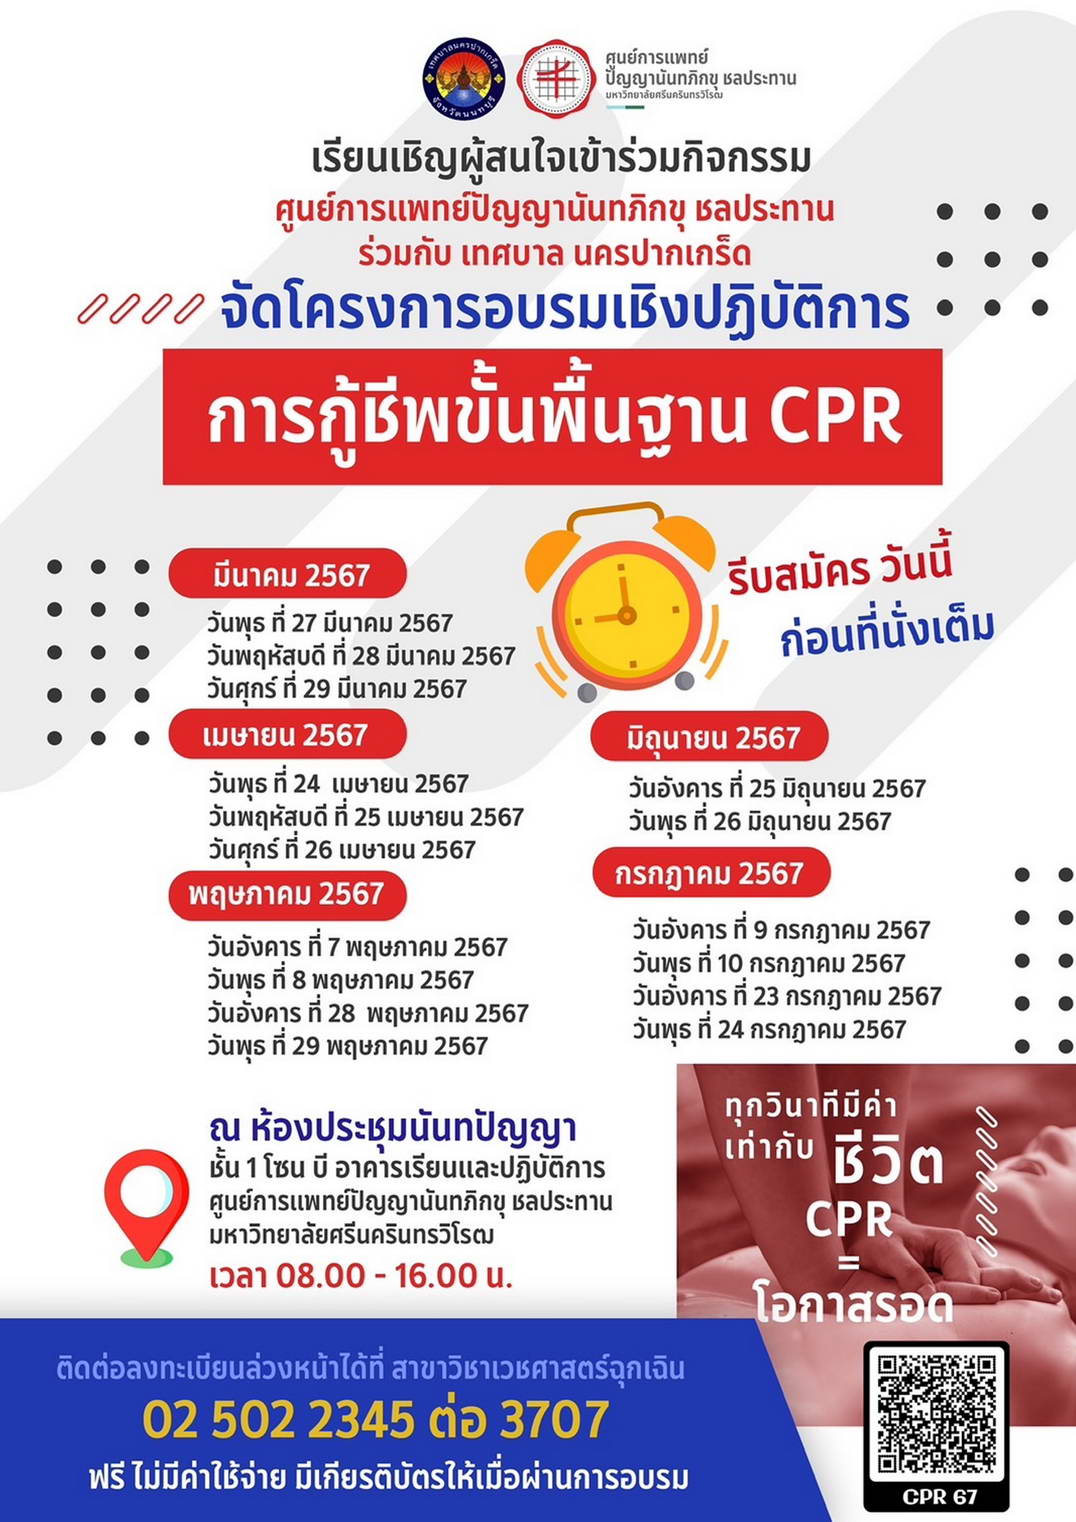 โครงการอบรมเชิงปฏิบัติการ การกู้ชีพขั้นพื้นฐาน CPR ประจำปี 2567